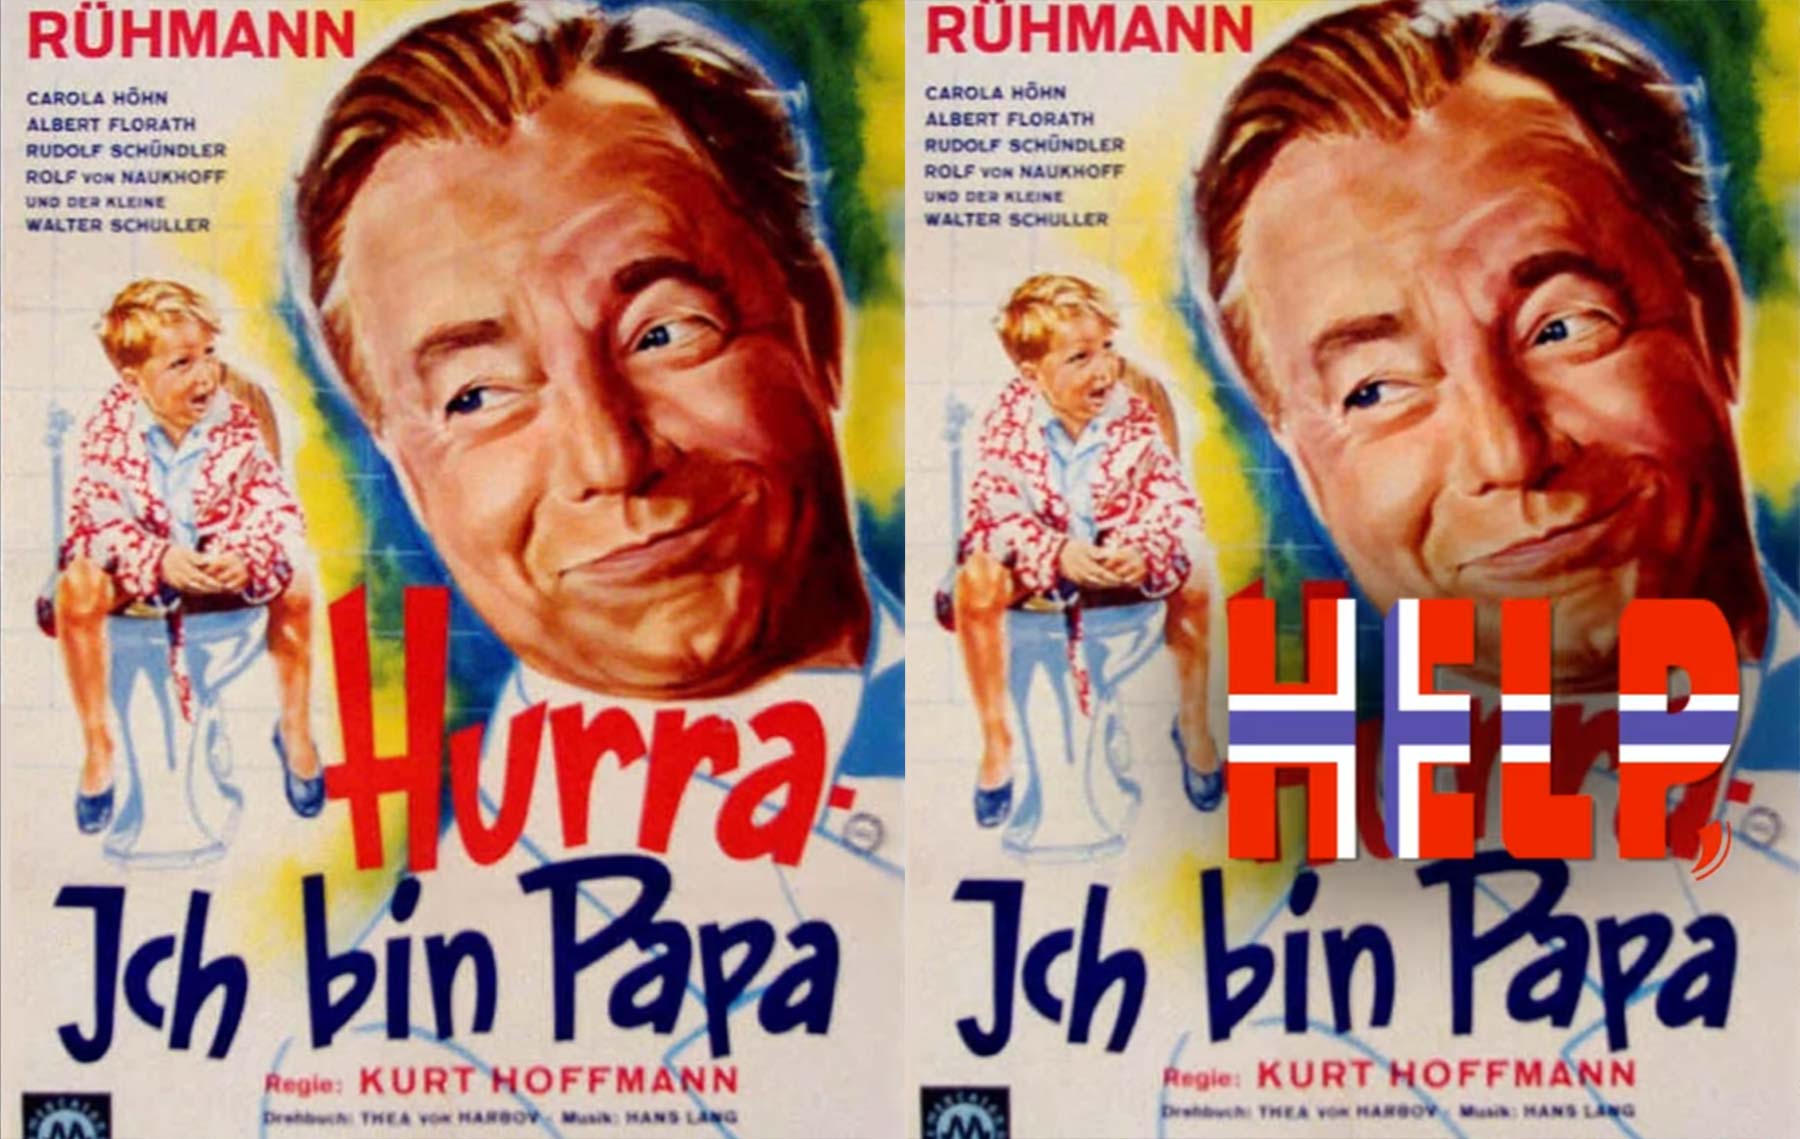 Hilfe, norwegische Filmtitel-Übersetzungen sind kurios! norwegen-filmtitel-hilfe 